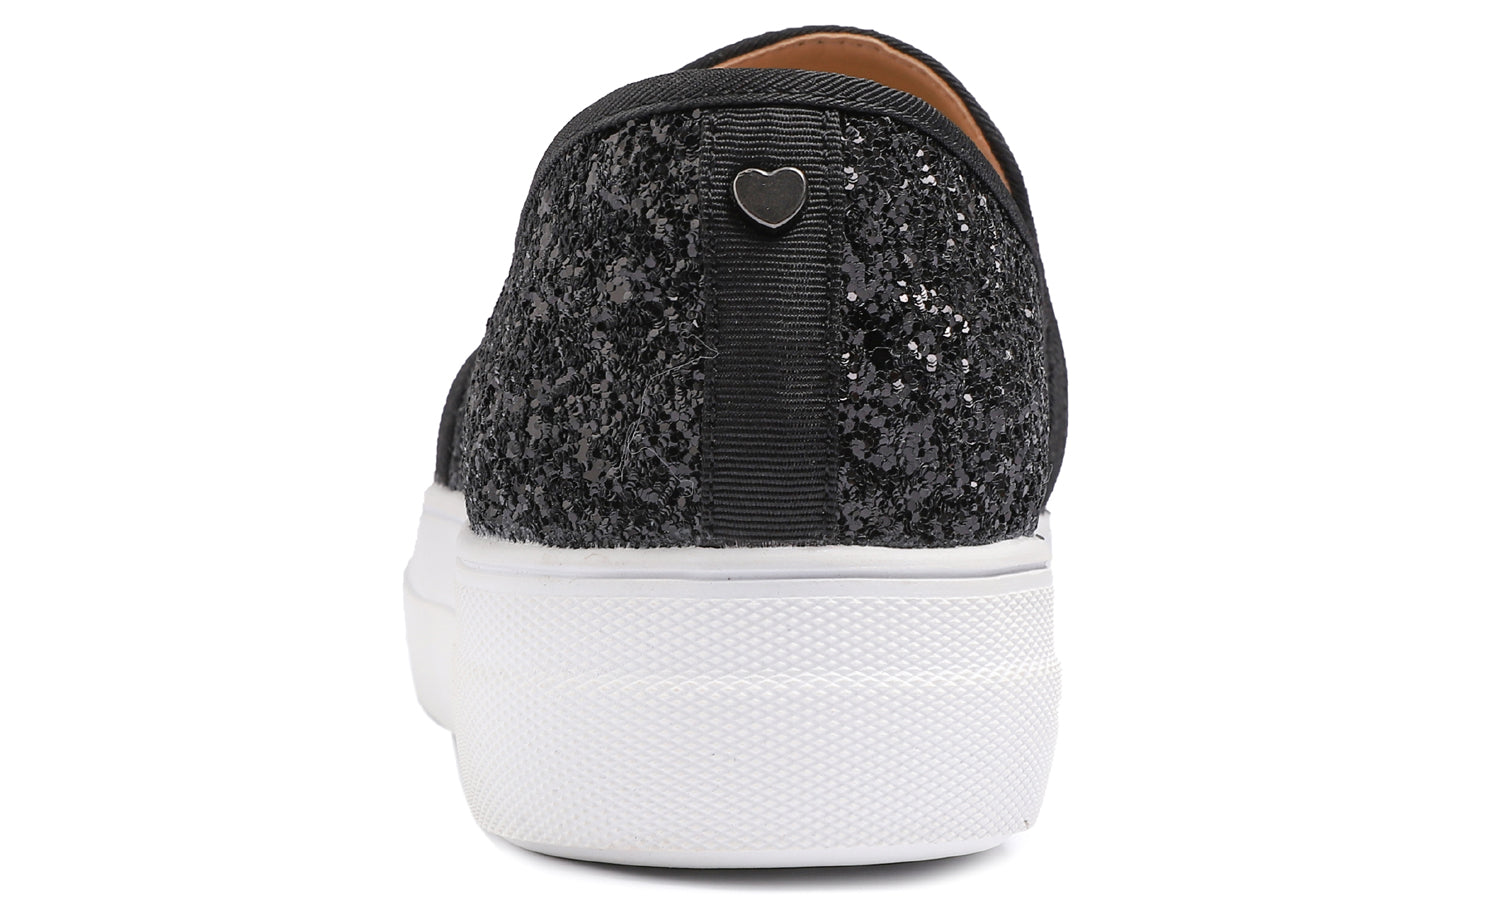 Feversole Women's Glitter Black Platform Slip On Sneaker Casual Flat Loafers